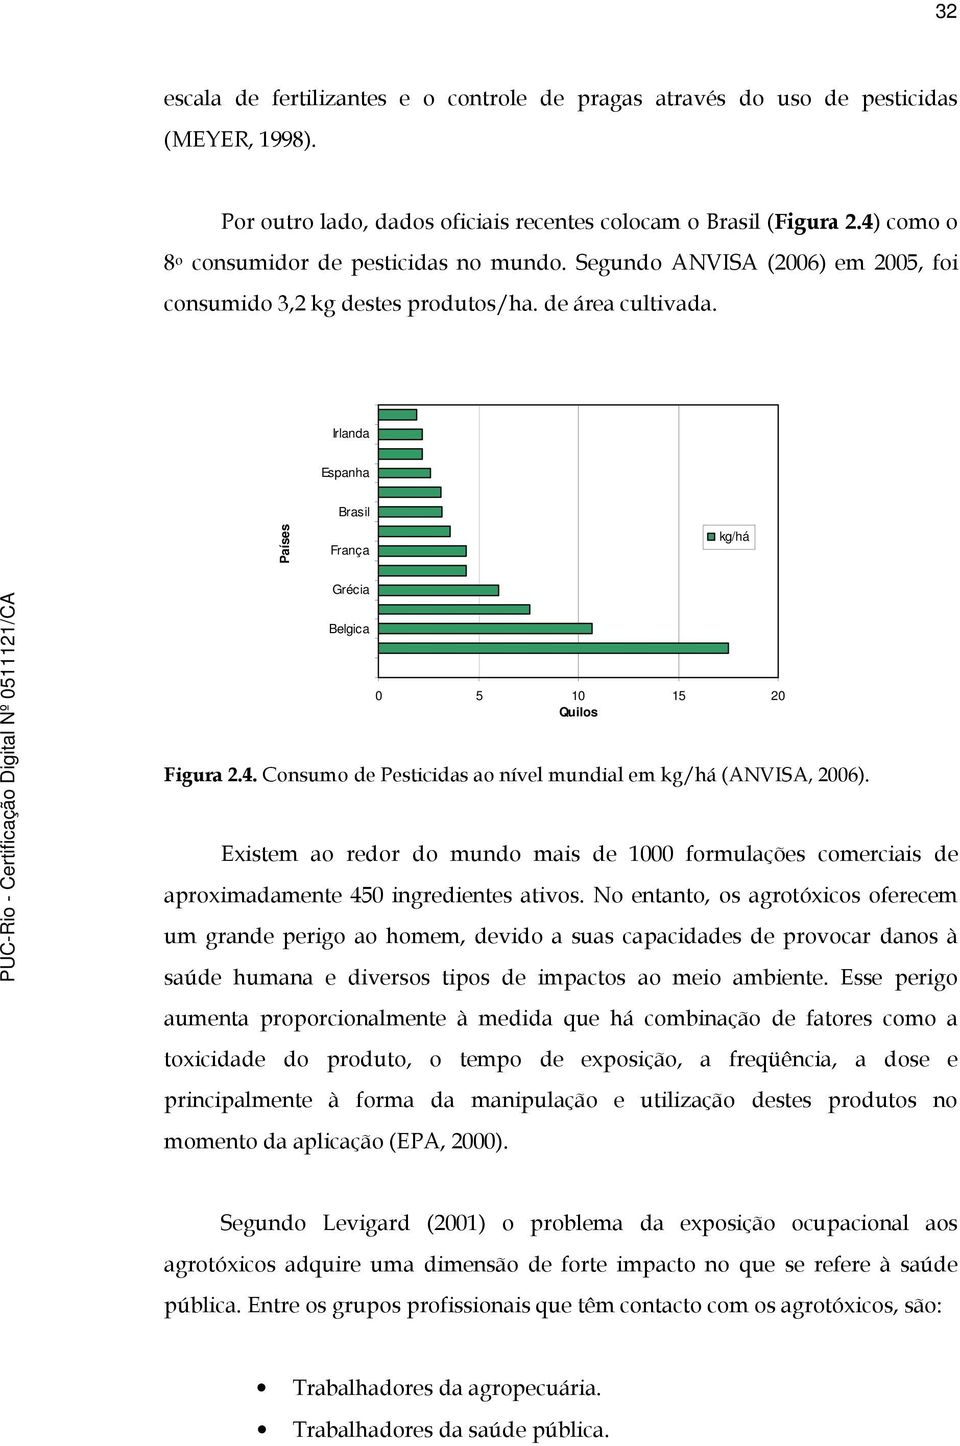 Irlanda Espanha Brasil Países França kg/há Grécia Belgica 0 5 10 15 20 Quilos Figura 2.4. Consumo de Pesticidas ao nível mundial em kg/há (ANVISA, 2006).